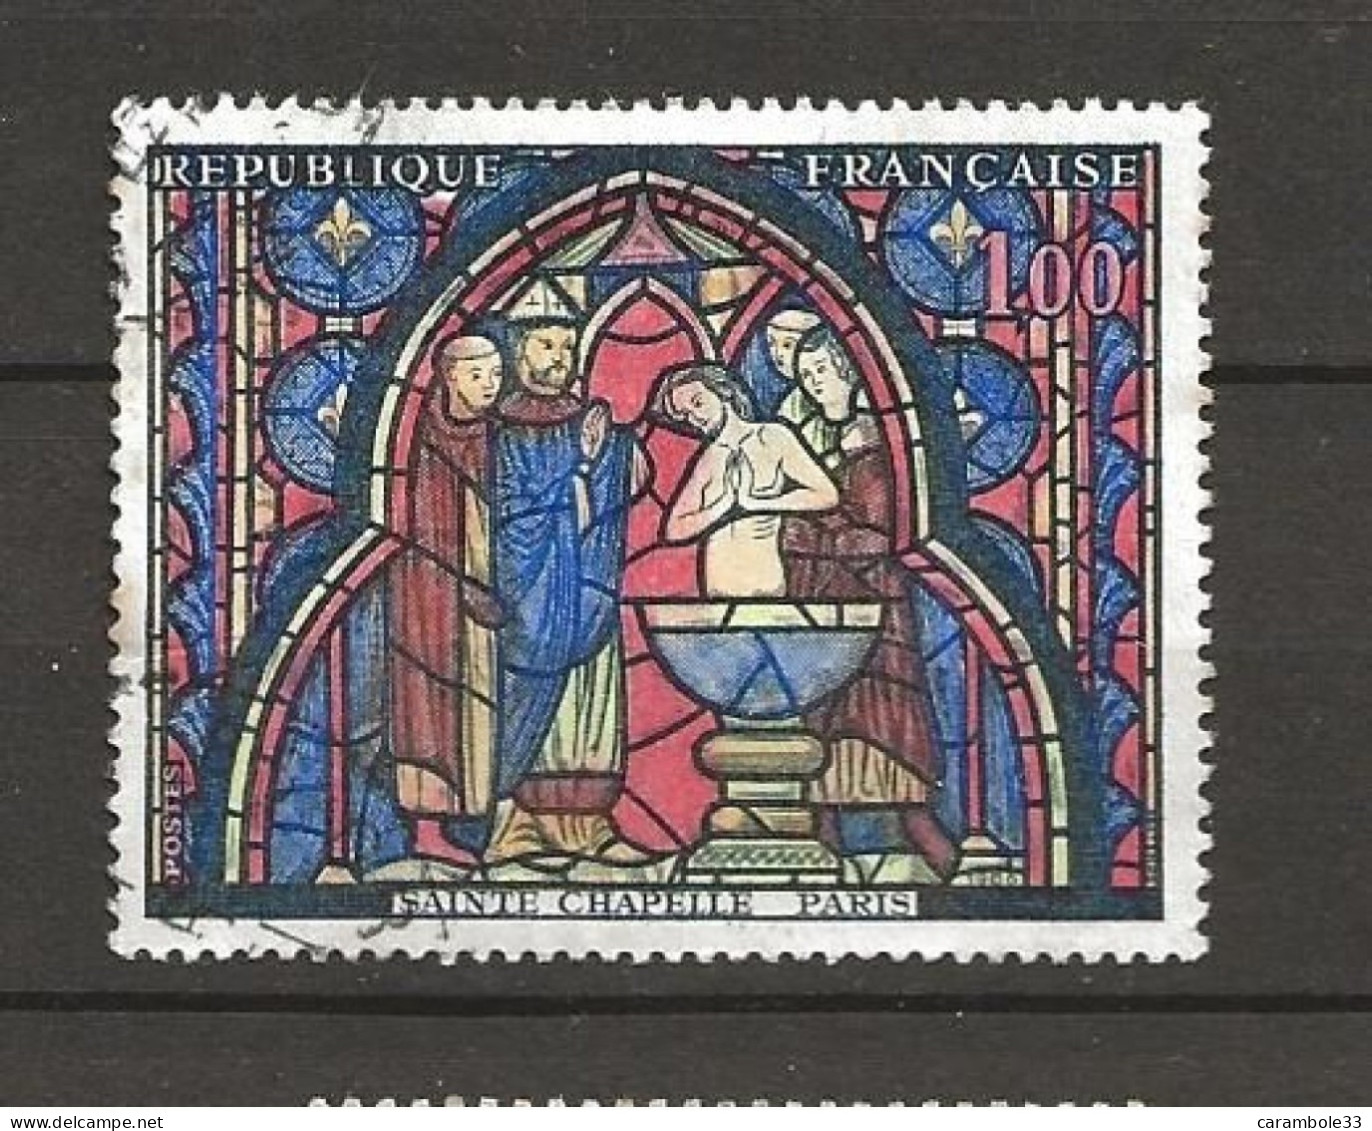 TIMBRE  FRANCE SAINTE CHAPELLE  PARIS   Oblitéré 1986  (1552) - Used Stamps